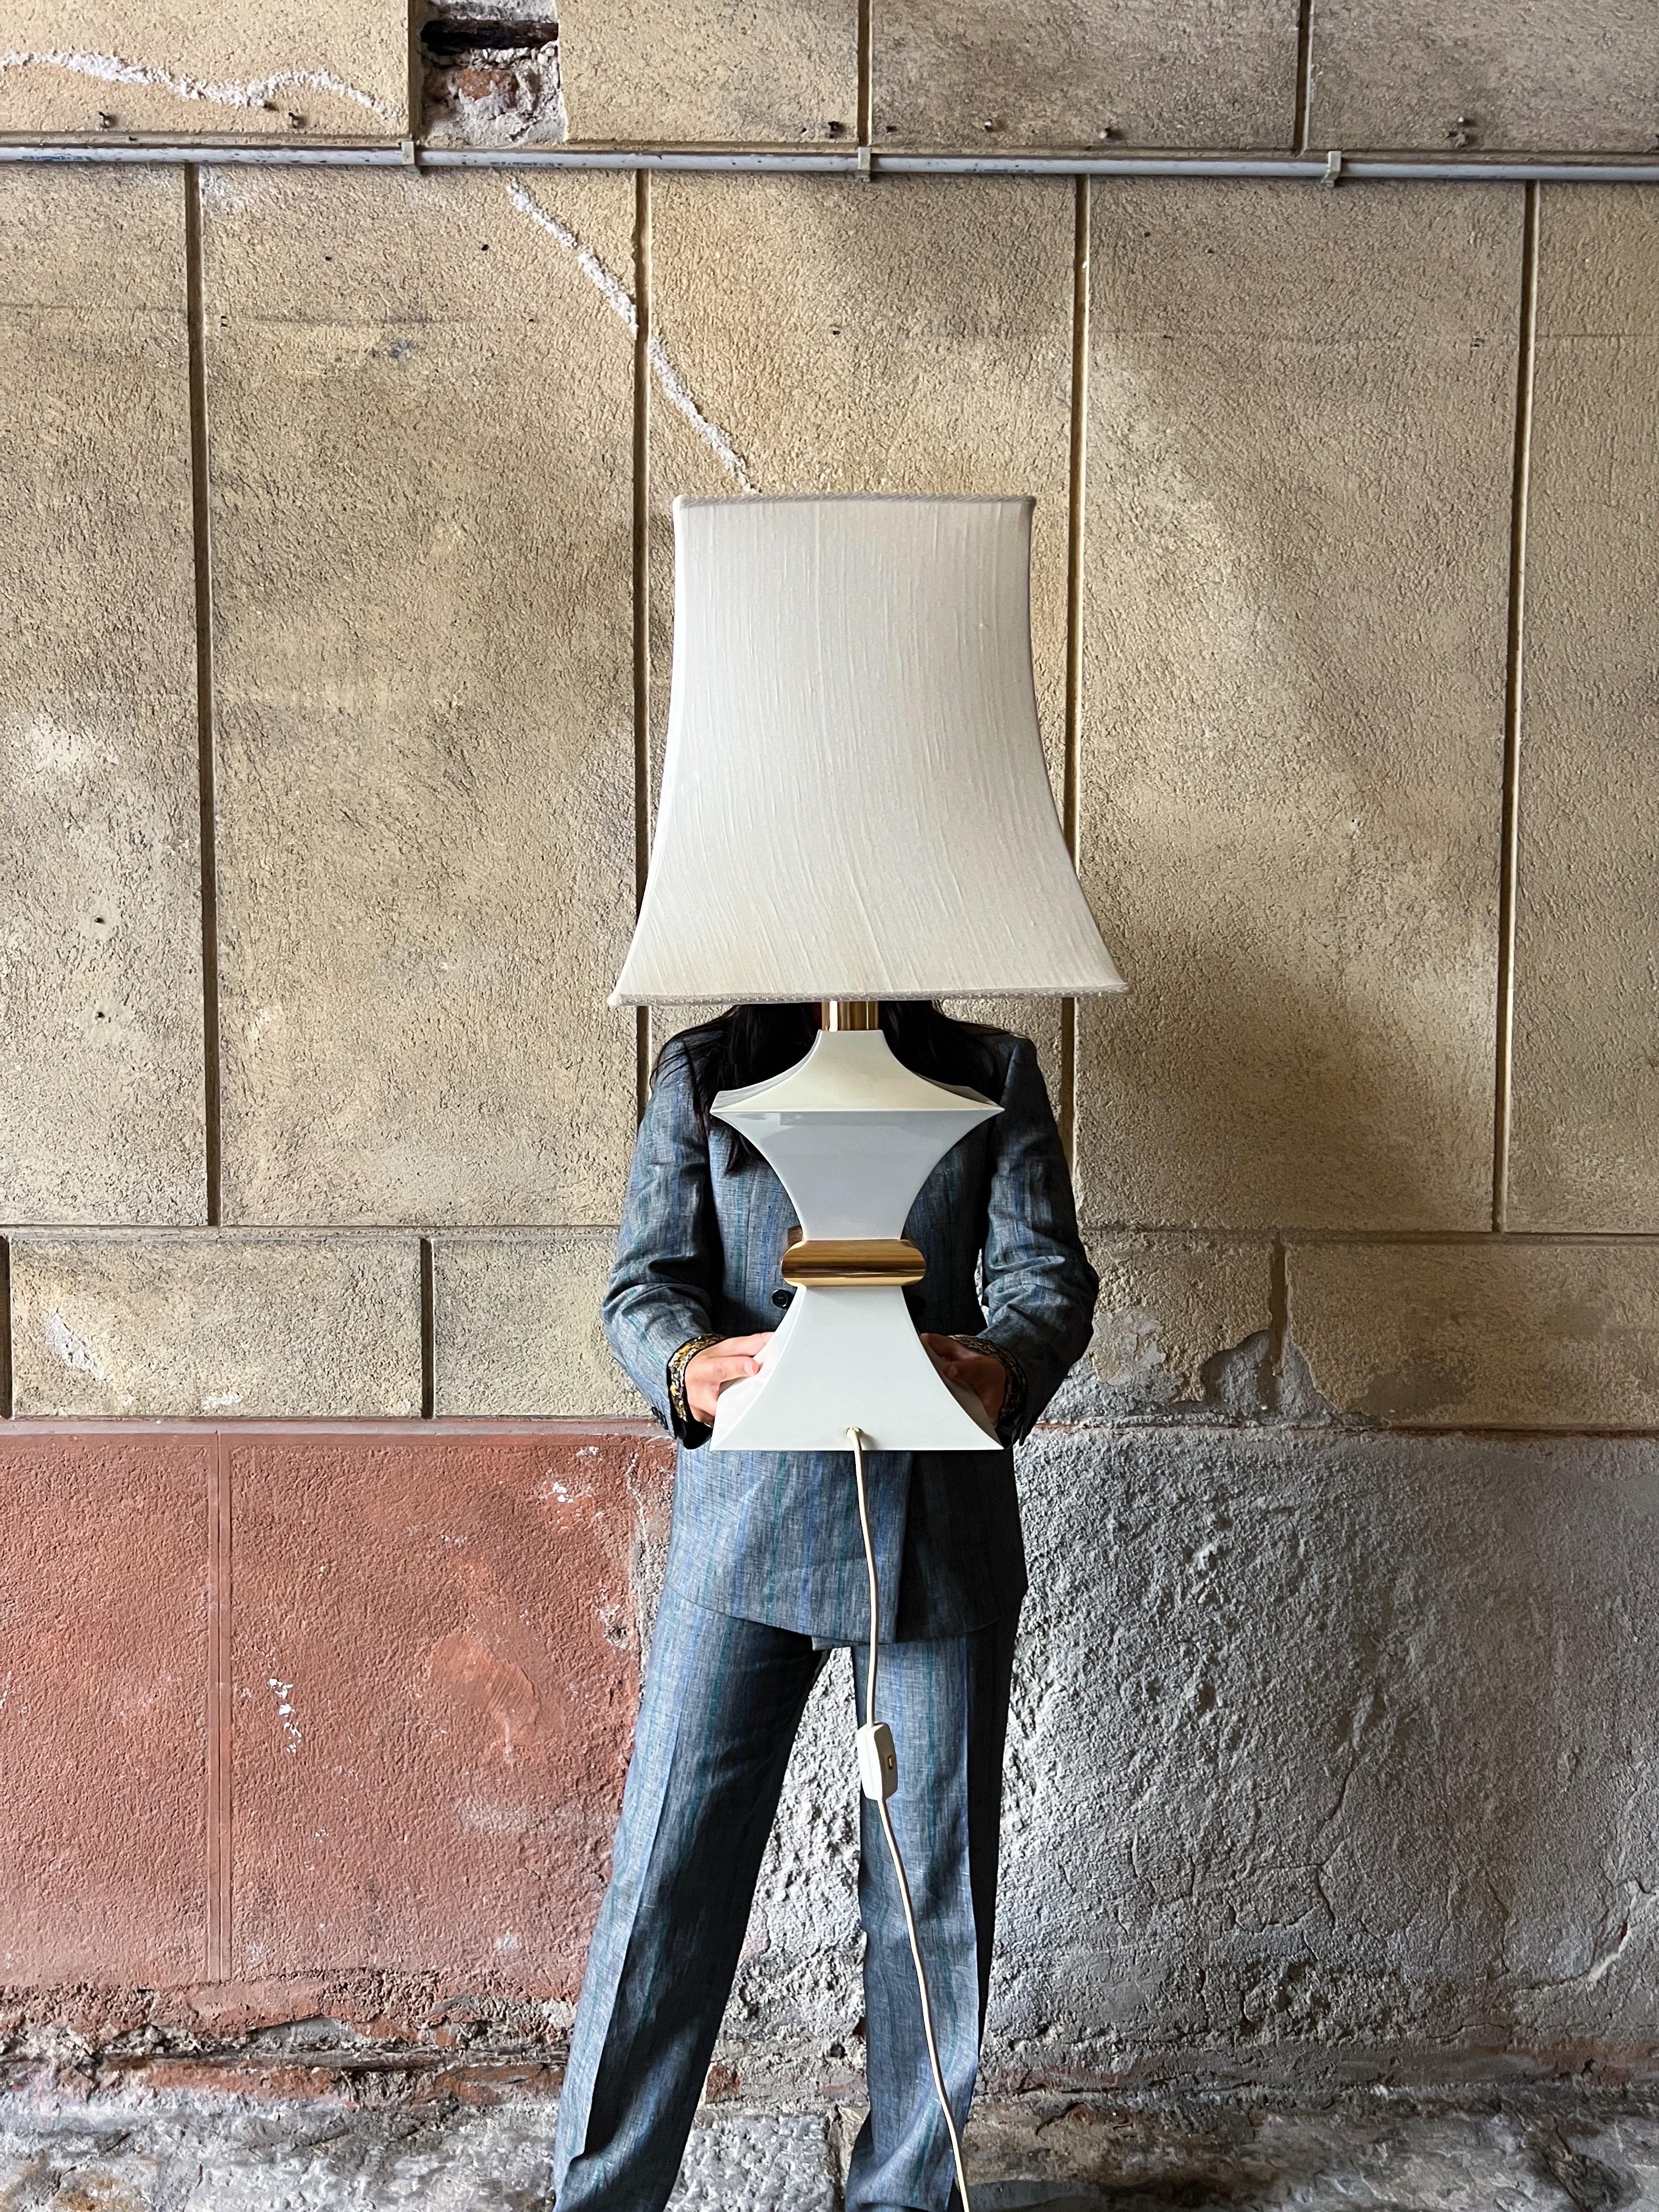 Exquise lampe de table de grande taille, fabriquée en Italie dans les années 1970, cette lampe est un véritable témoignage de l'élégance du design italien.

Méticuleusement façonné en métal recouvert de crème, il est orné d'un brillant accent en